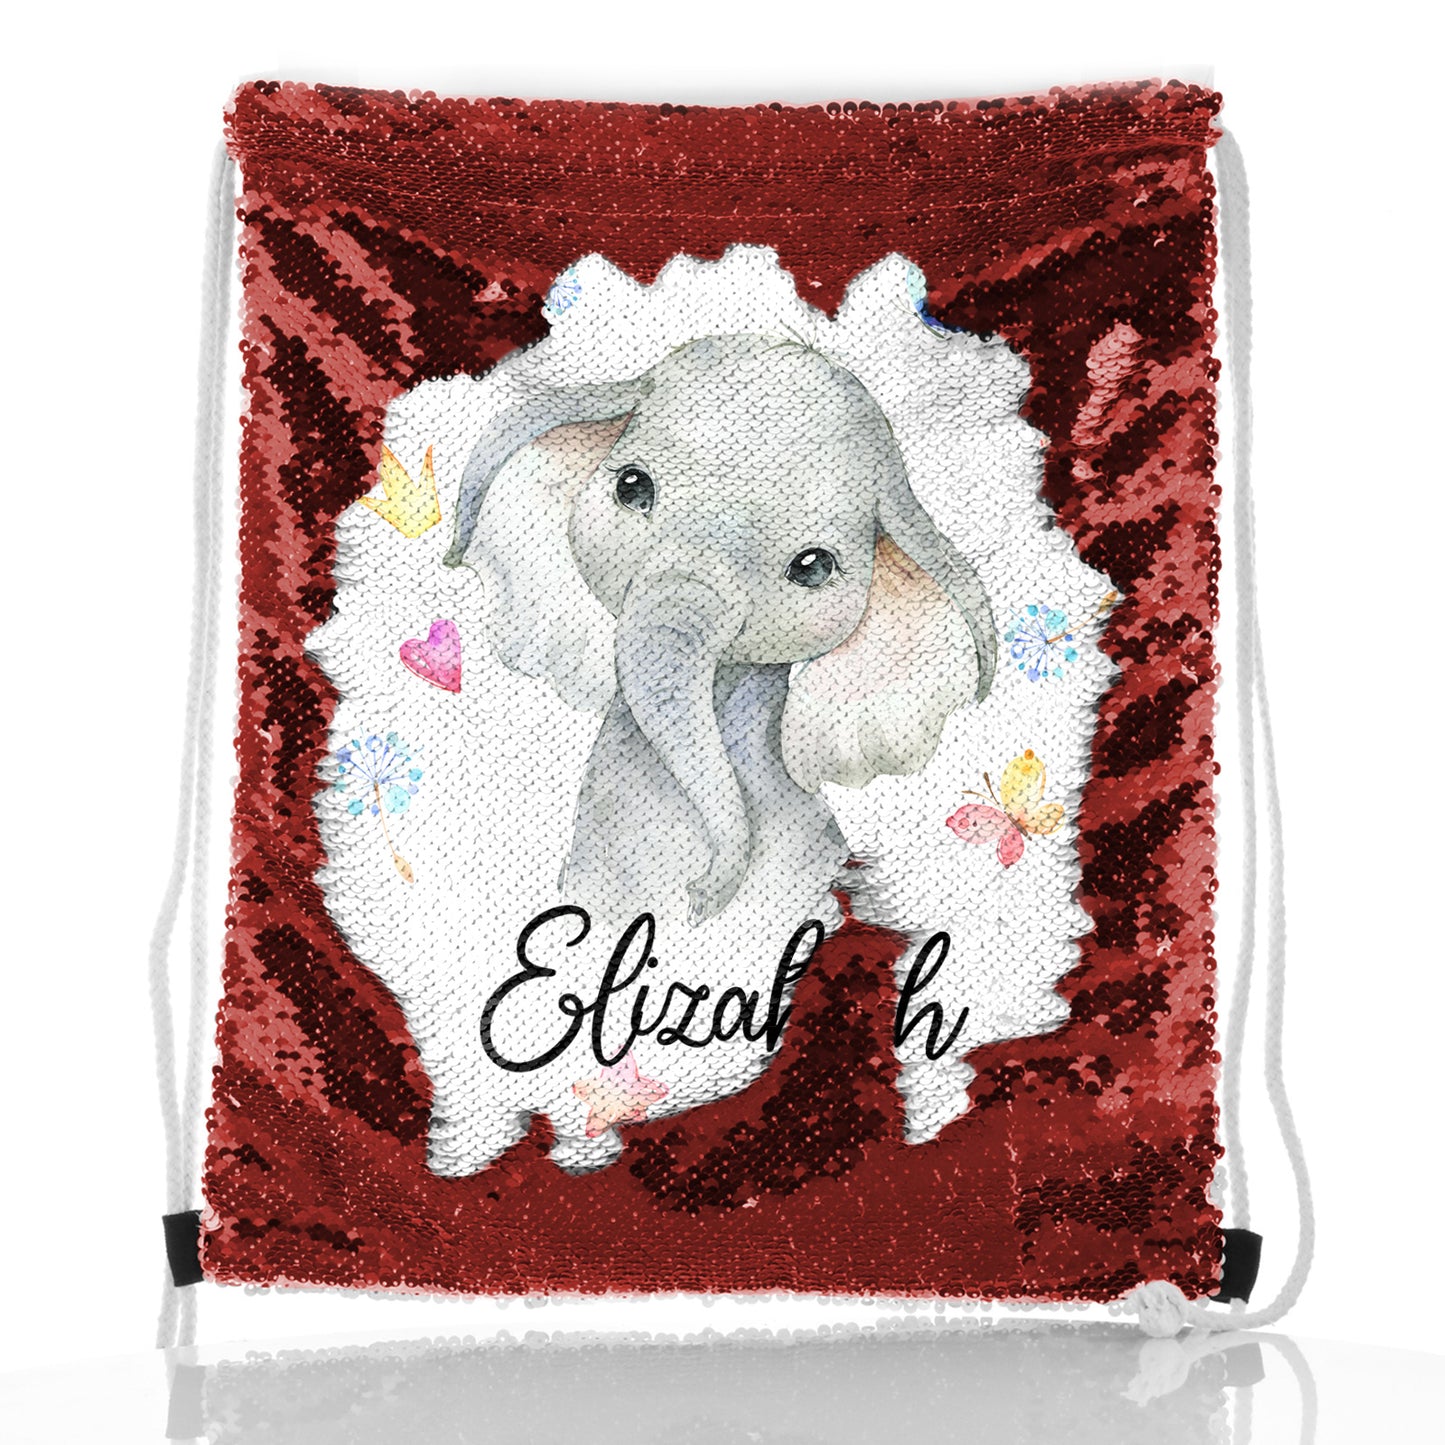 Personalisierter Pailletten-Rucksack mit Kordelzug, grauer Elefant mit Herzen, Sternen, Kronen, Schmetterling und niedlichem Text